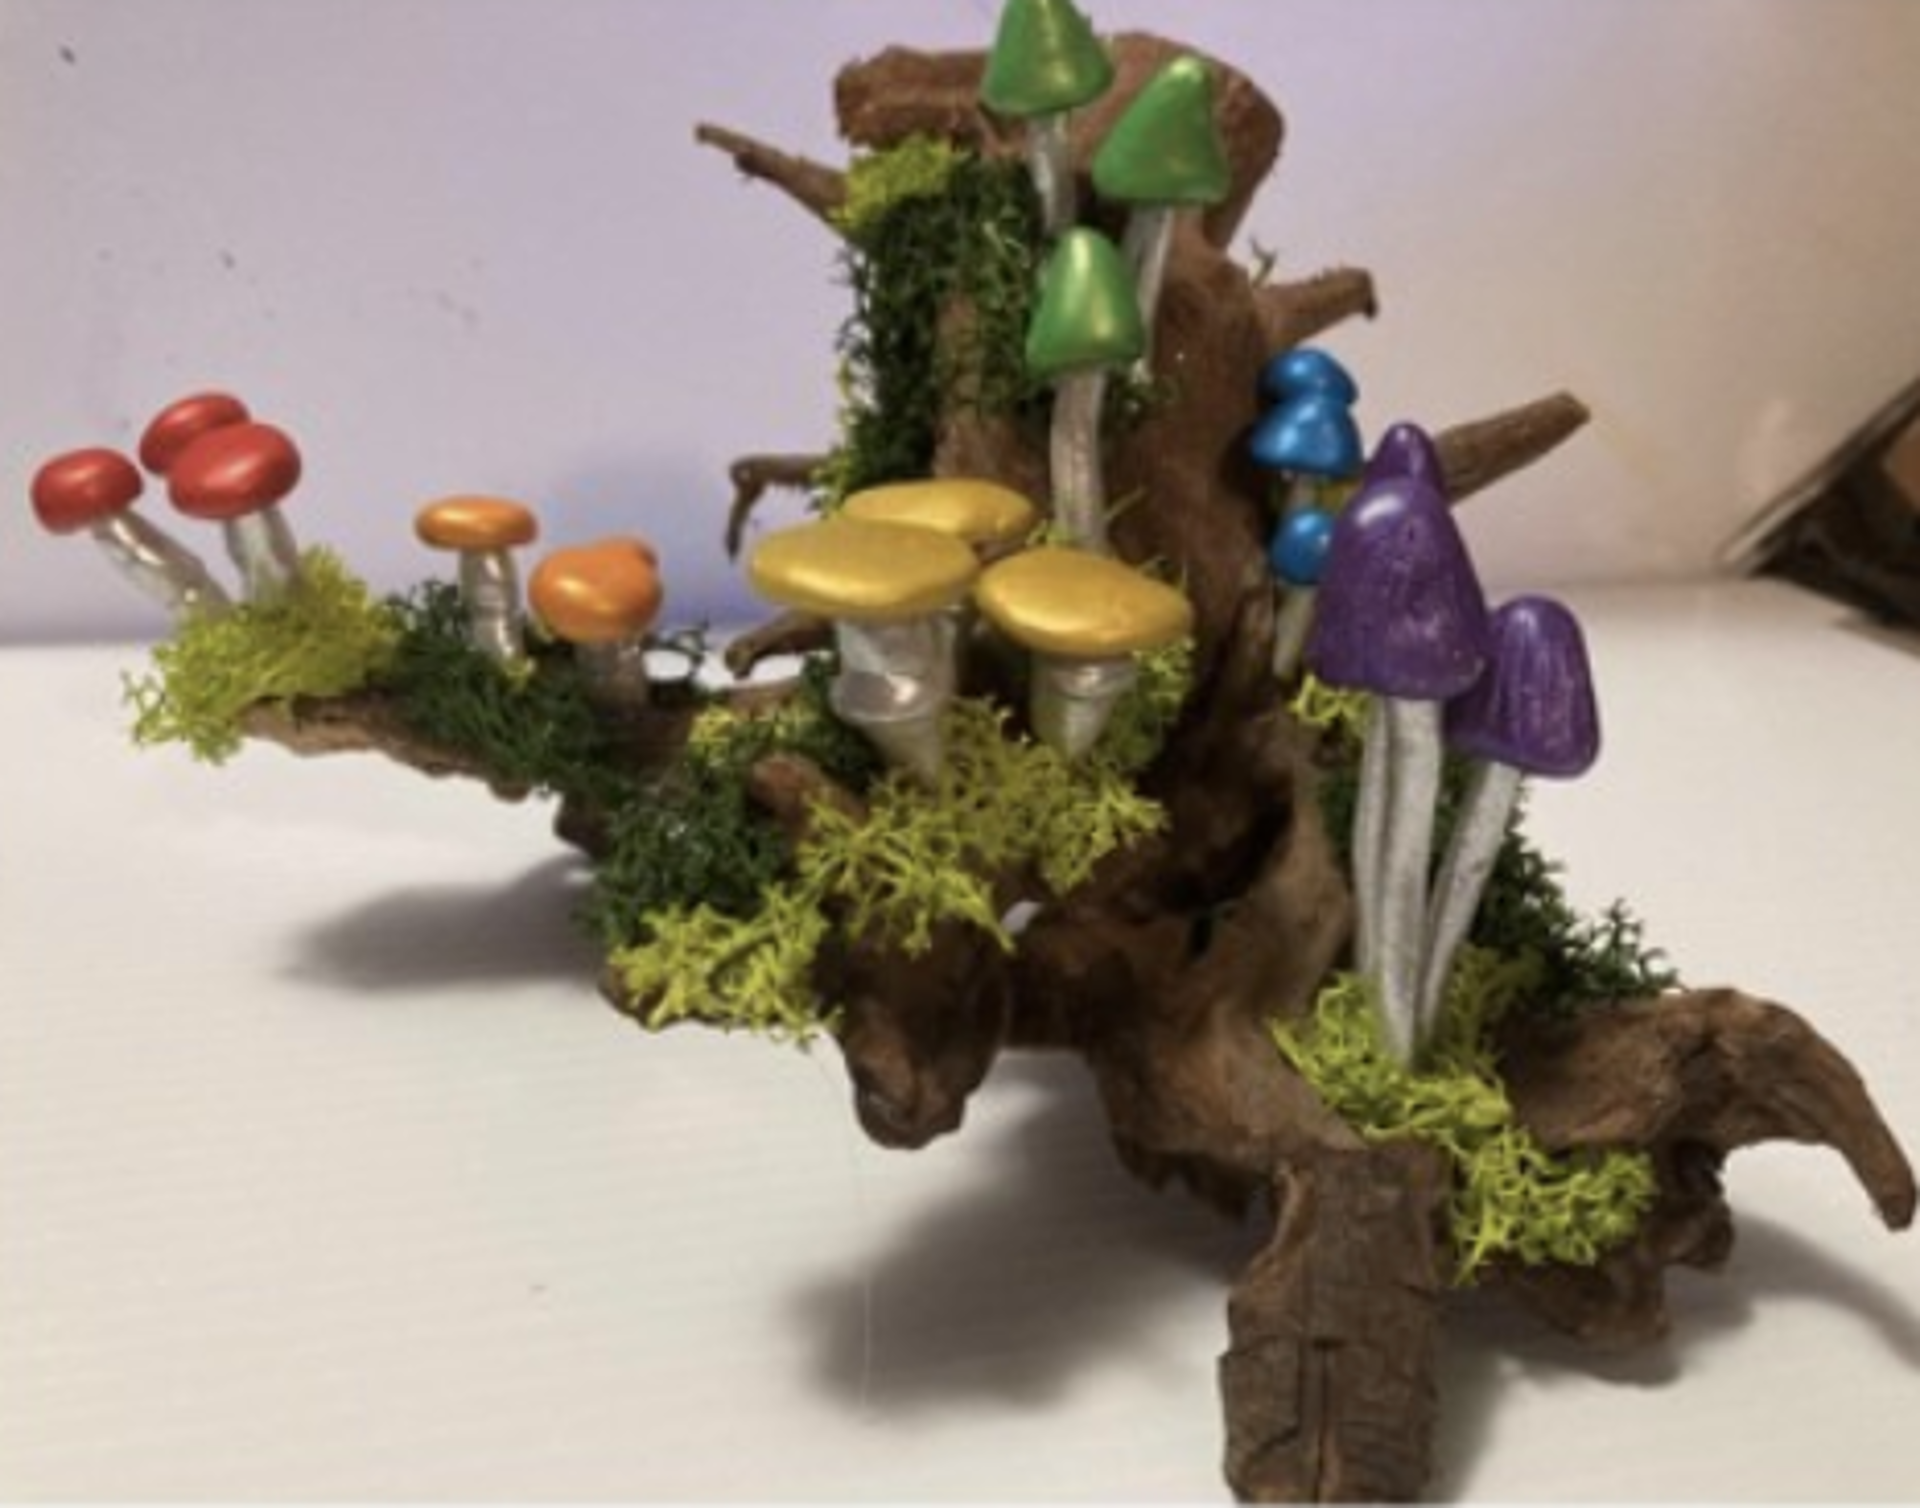 Rainbow Fungi Phenomenon by Tara Sue Salusso